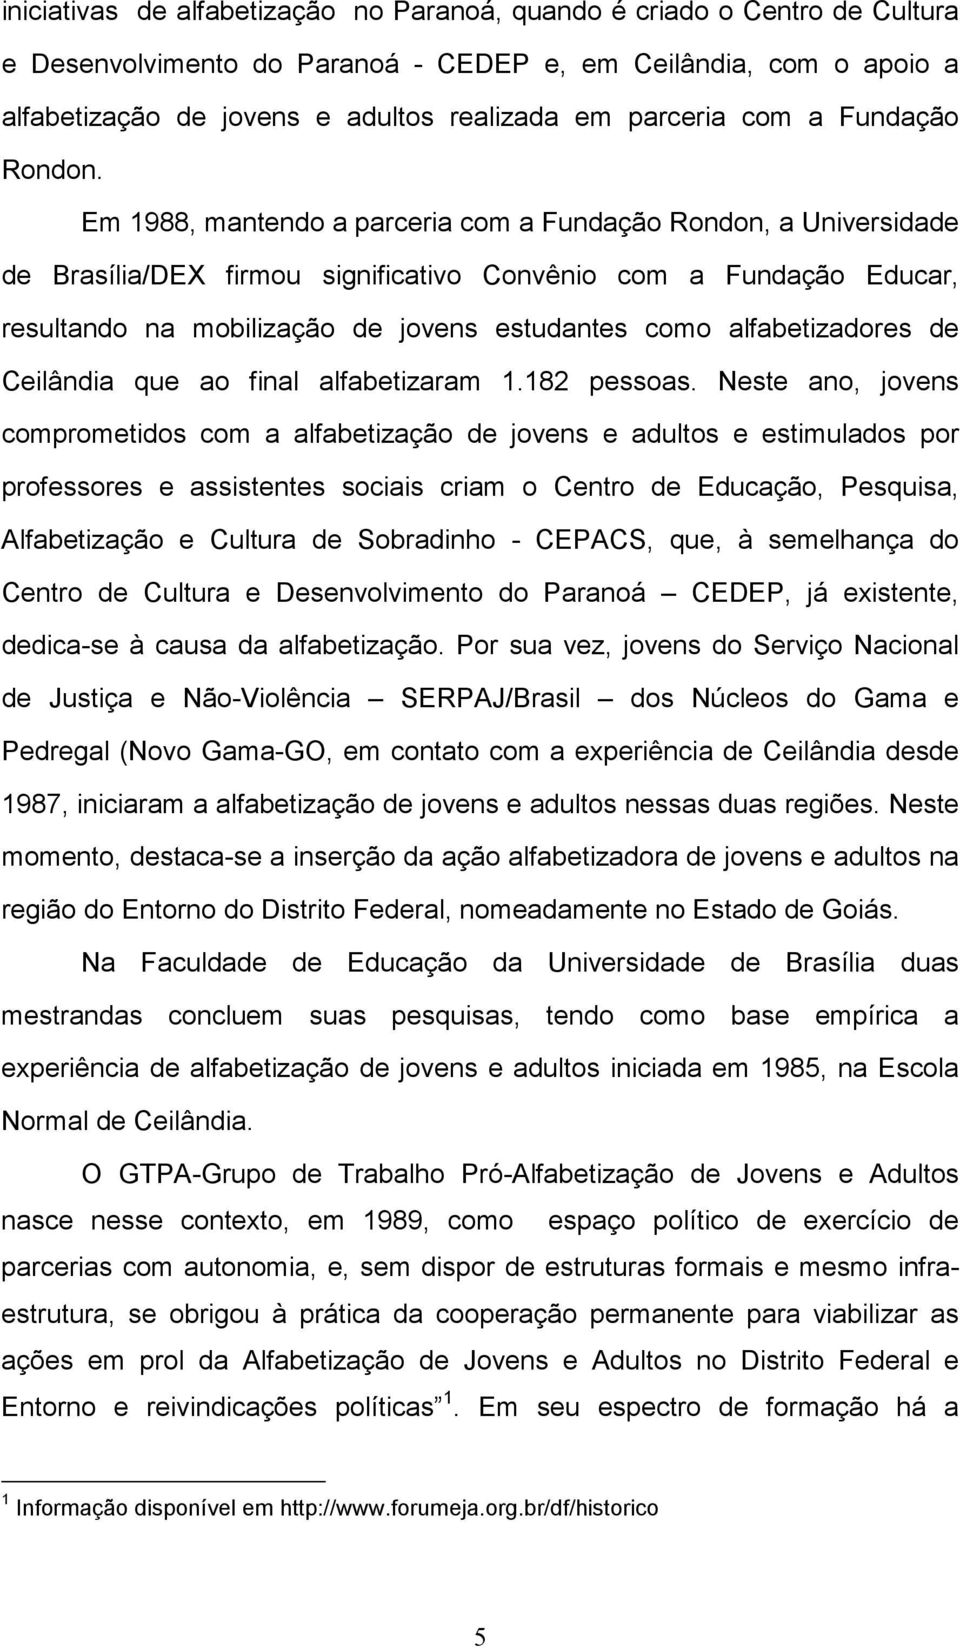 Em 1988, mantendo a parceria com a Fundação Rondon, a Universidade de Brasília/DEX firmou significativo Convênio com a Fundação Educar, resultando na mobilização de jovens estudantes como